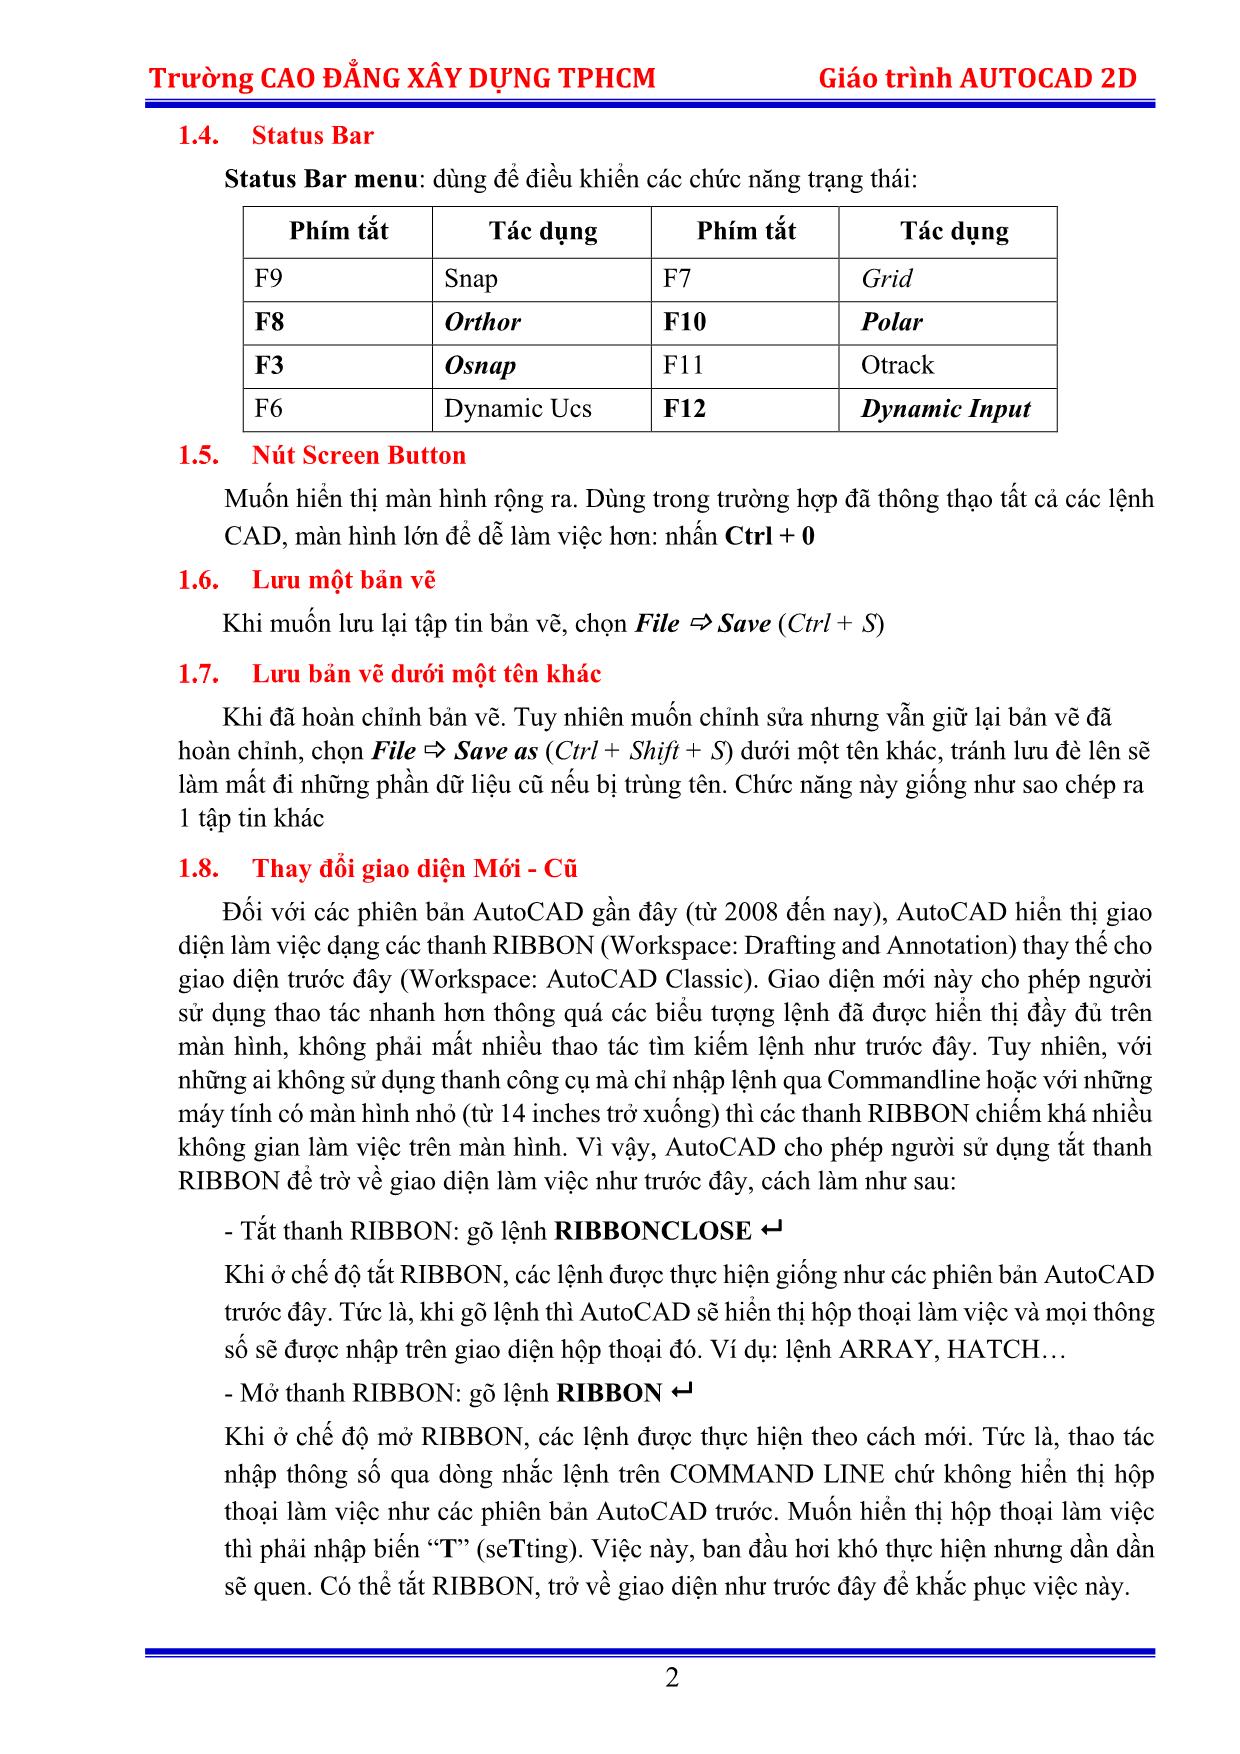 Giáo trình Autocad 2D trang 5